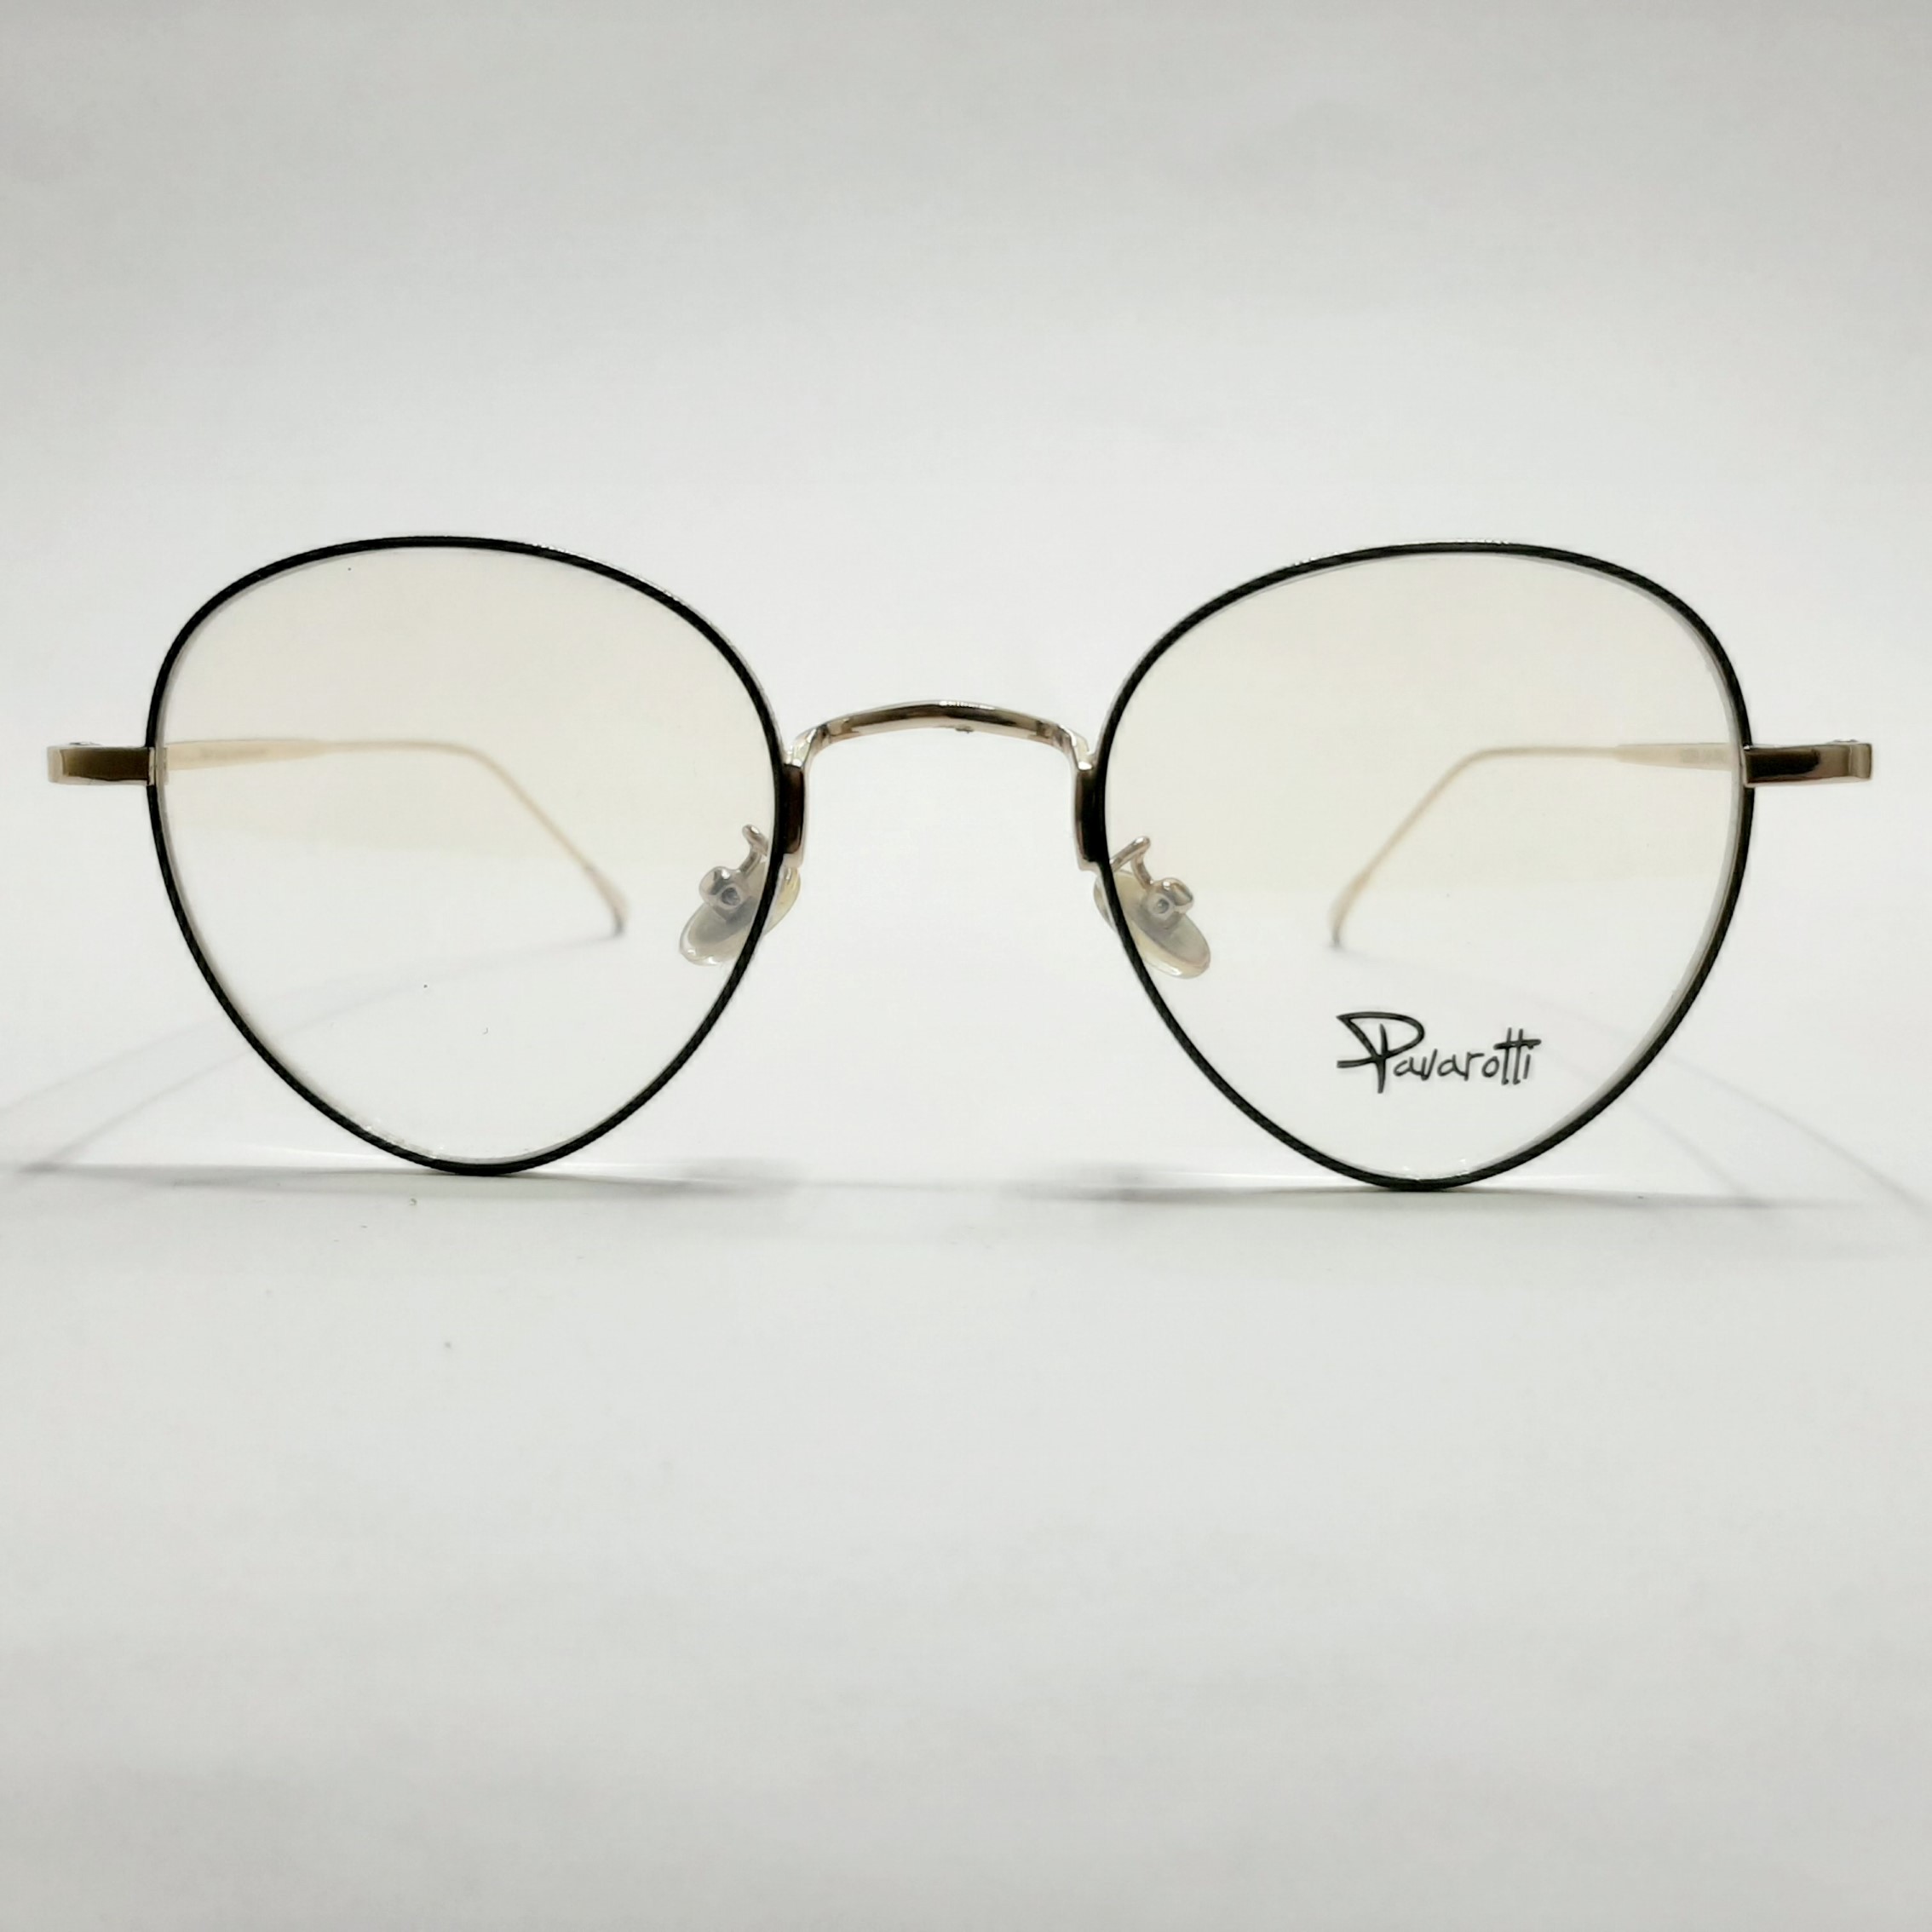 فریم عینک طبی پاواروتی مدل P52059c6 -  - 2